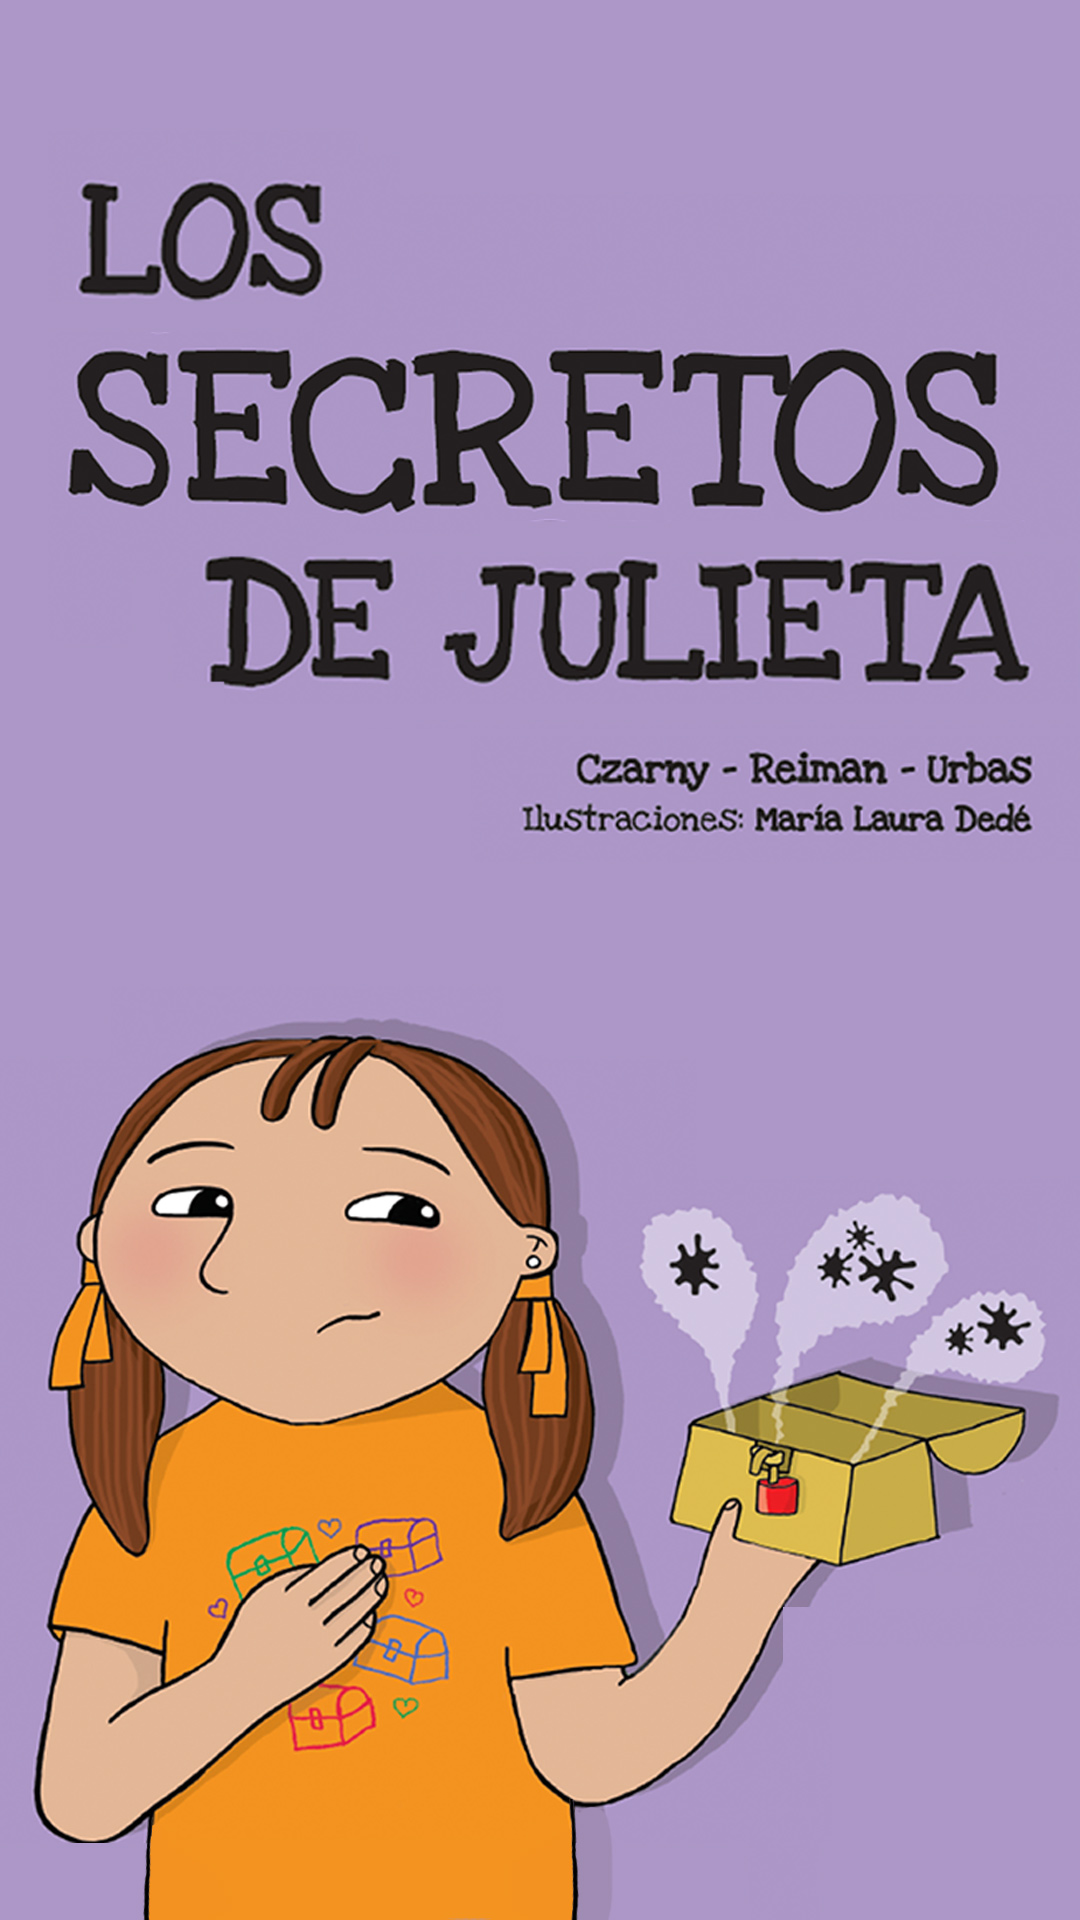 Los secretos de Julieta. Ediciones chicos.net